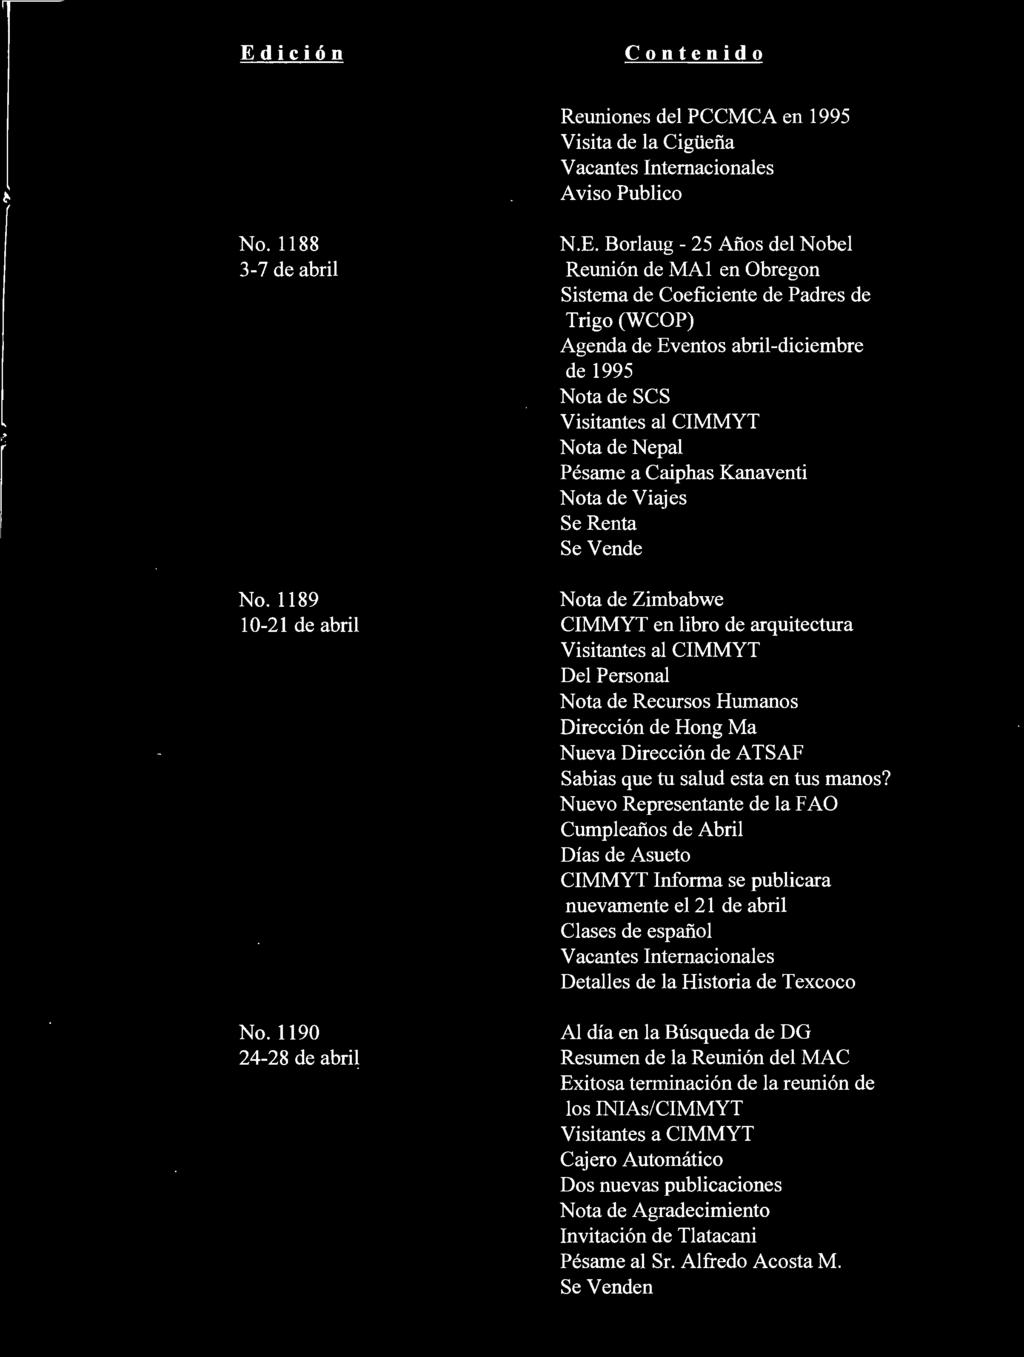 Edicion Contenido Reuniones del PCCMCA en 1995 Visita de la Ciguefia Vacantes Intemacionales A viso Publico No. 1188 3-7 de abril No. 1189 10-21 de abril No. 1190 24-28 de abril N.E. Borlaug - 25